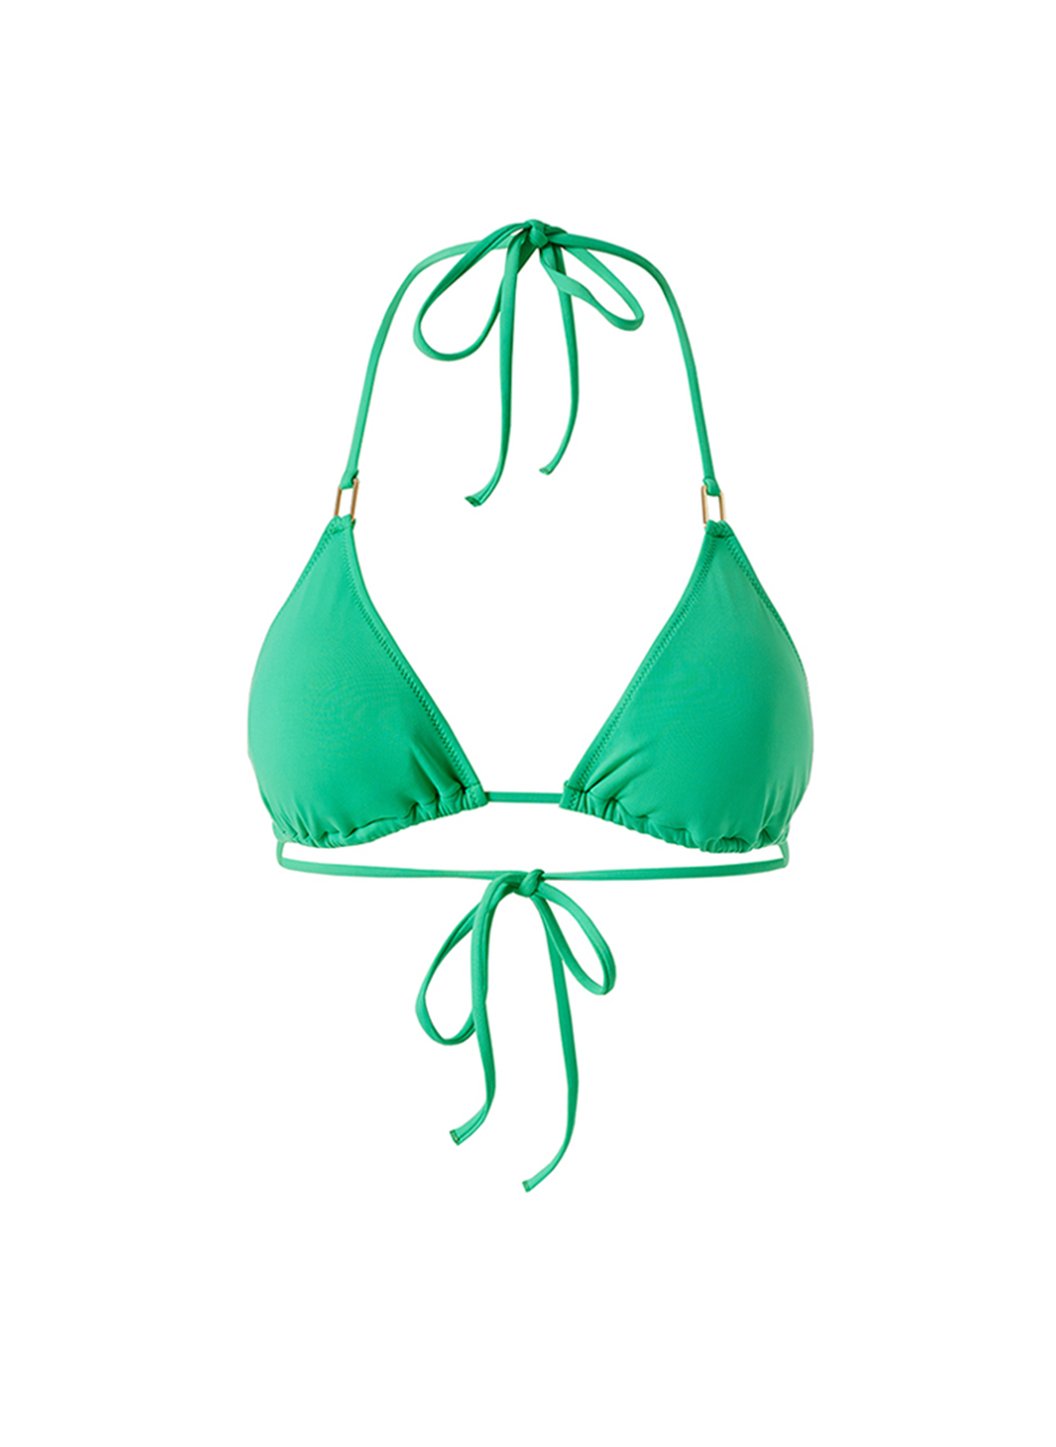 cancun-green-classic-triangle-bikini-top